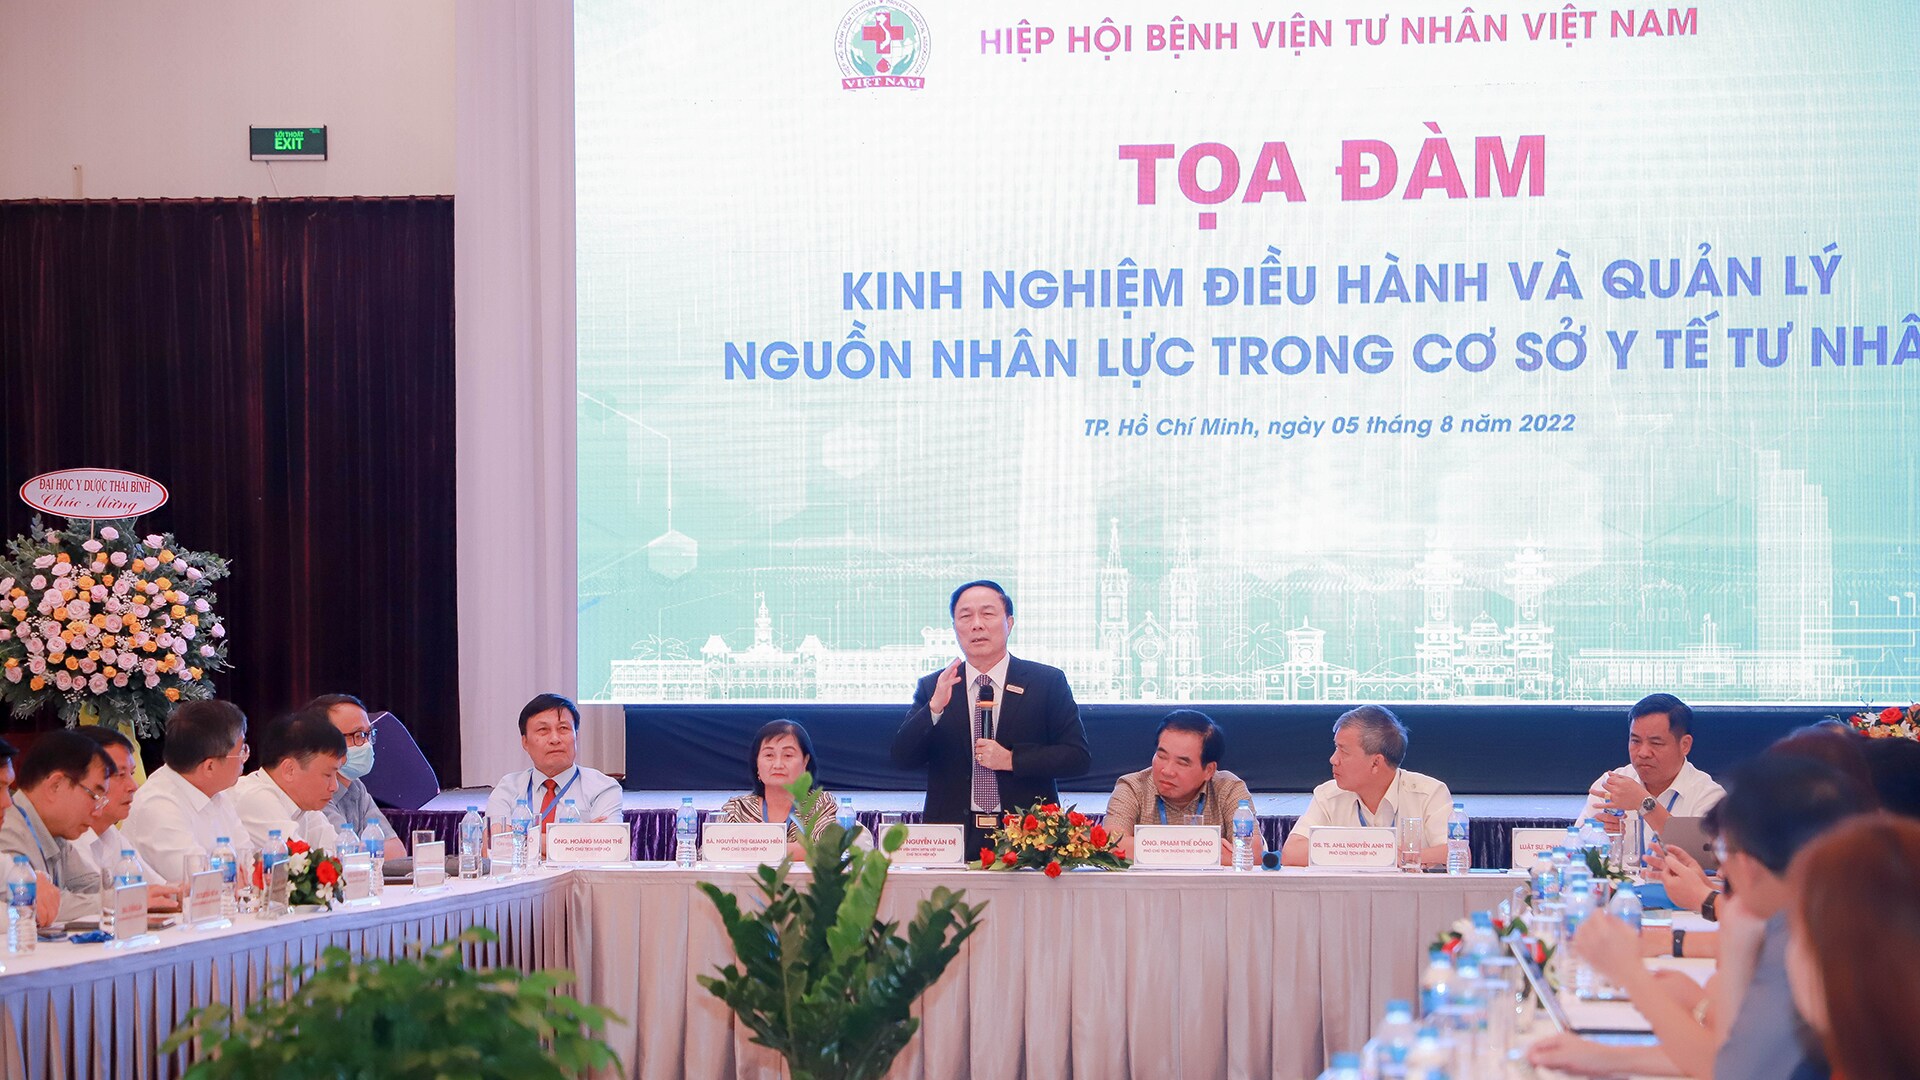 Philips tài trợ Hội nghị Hiệp hội Bệnh viện tư nhân Việt Nam